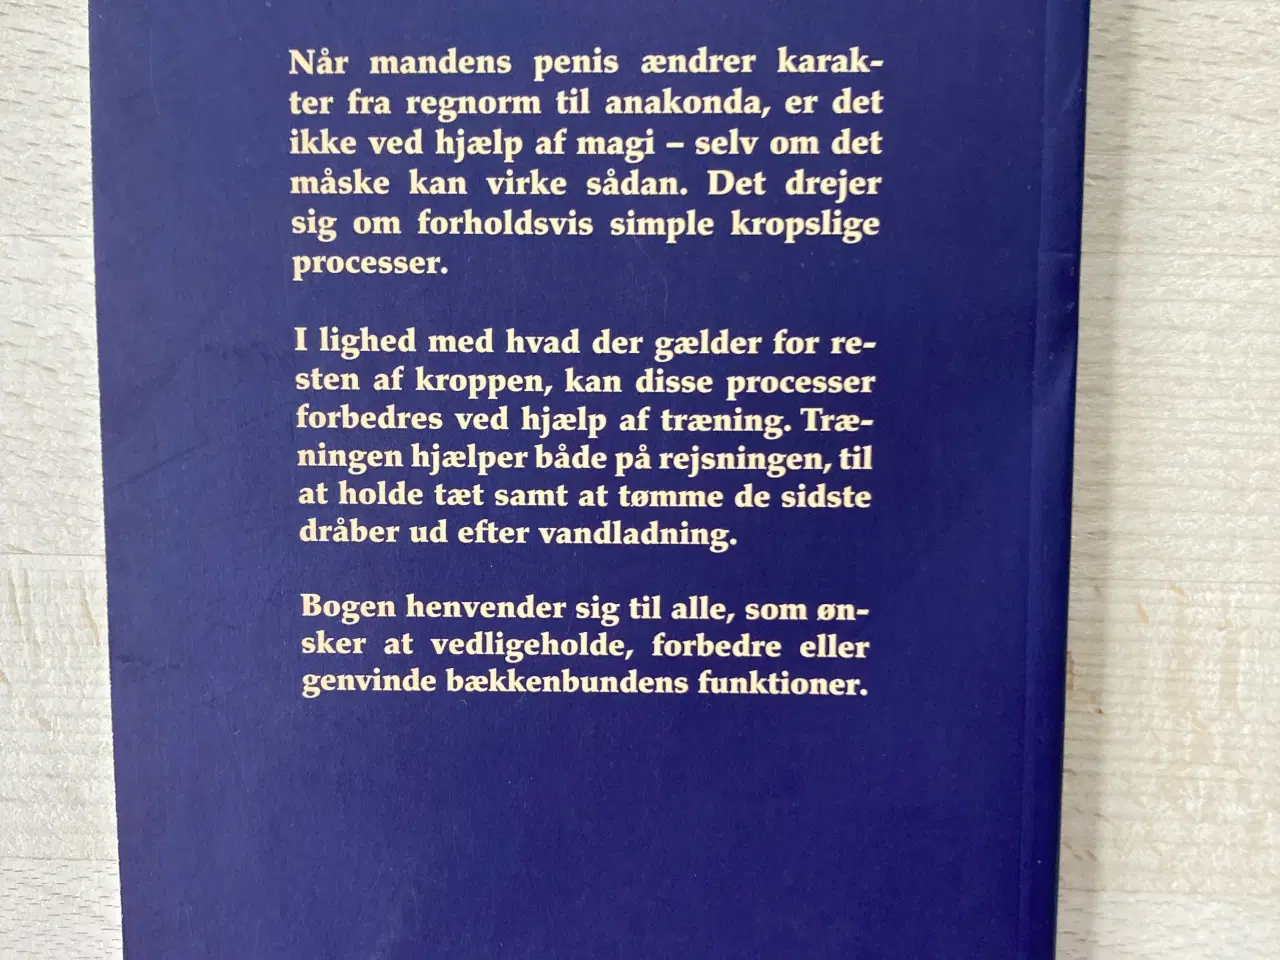 Billede 2 - Fra regnorm til anakonda, Søren Ekman